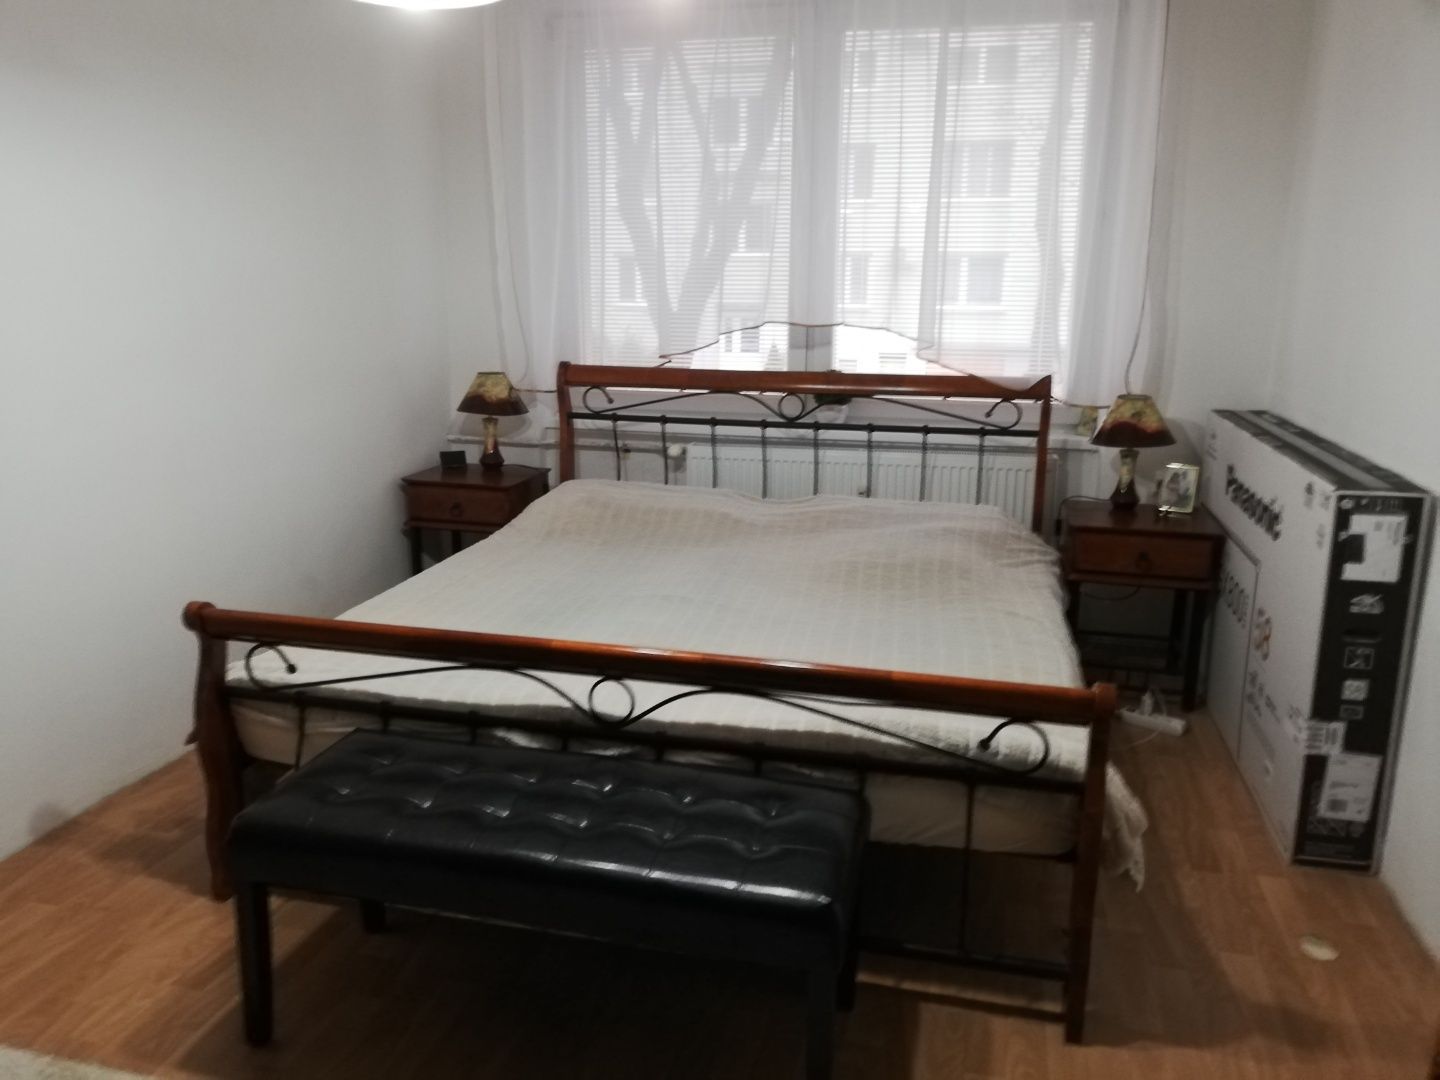 MIMORIADNA PONUKA - 3 izbový byt + 1 izbový byt v centre mesta Dunajská Streda na obľúbenom zvýšenom prízemí